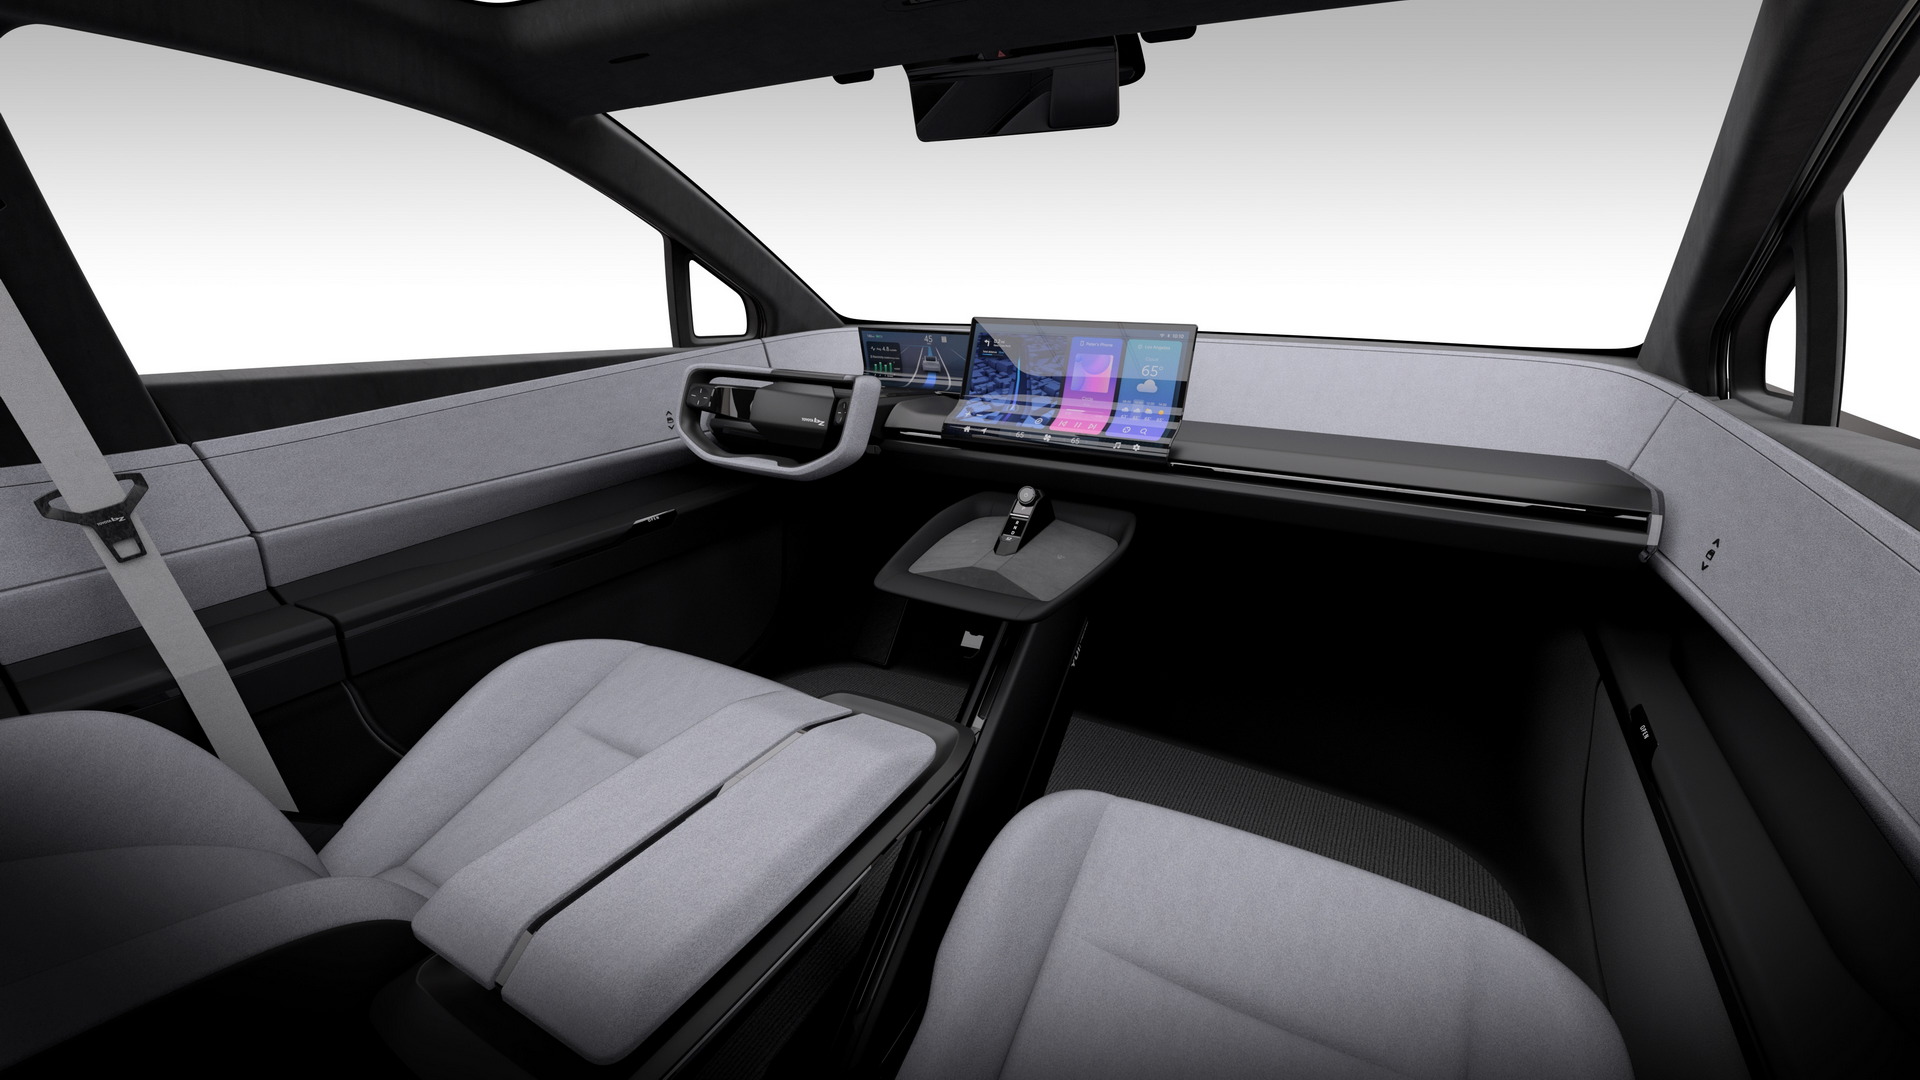 تدشين تويوتا bZ كومباكت SUV الكهربائية الجديدة كلياً بتصميم انسيابي وداخلية عصرية 11